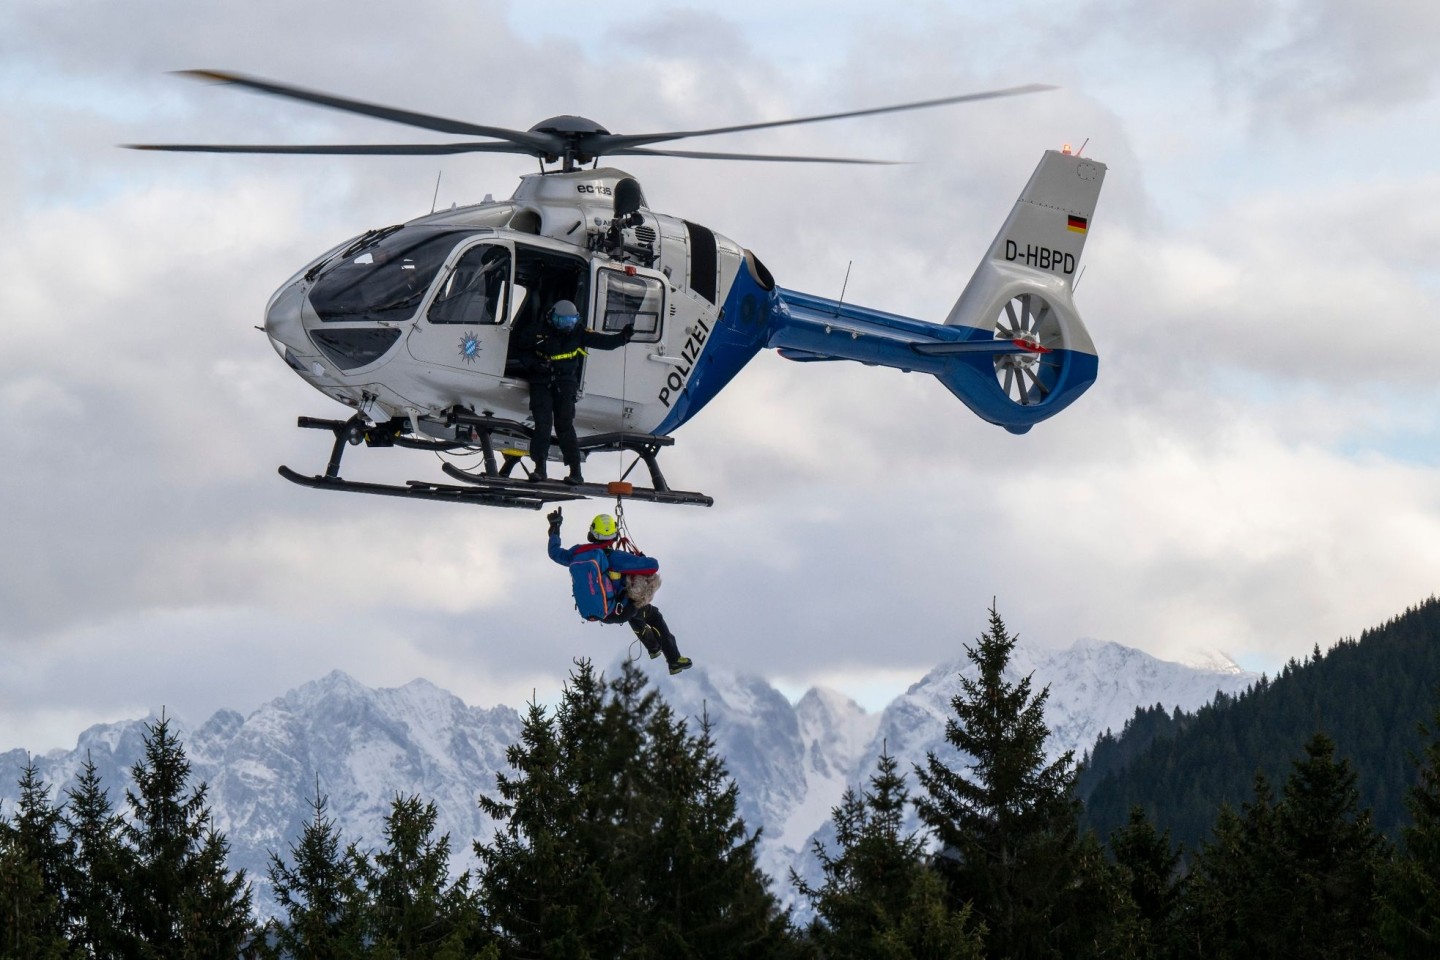 Eine Vorführung im bayerischen Oberaudorf zu Lawinengefahr und alpine Sicherheit. Angesichts einer ungewöhnlich hohen Zahl tödlicher Unfälle sind Bergwacht und Polizei besorgt.